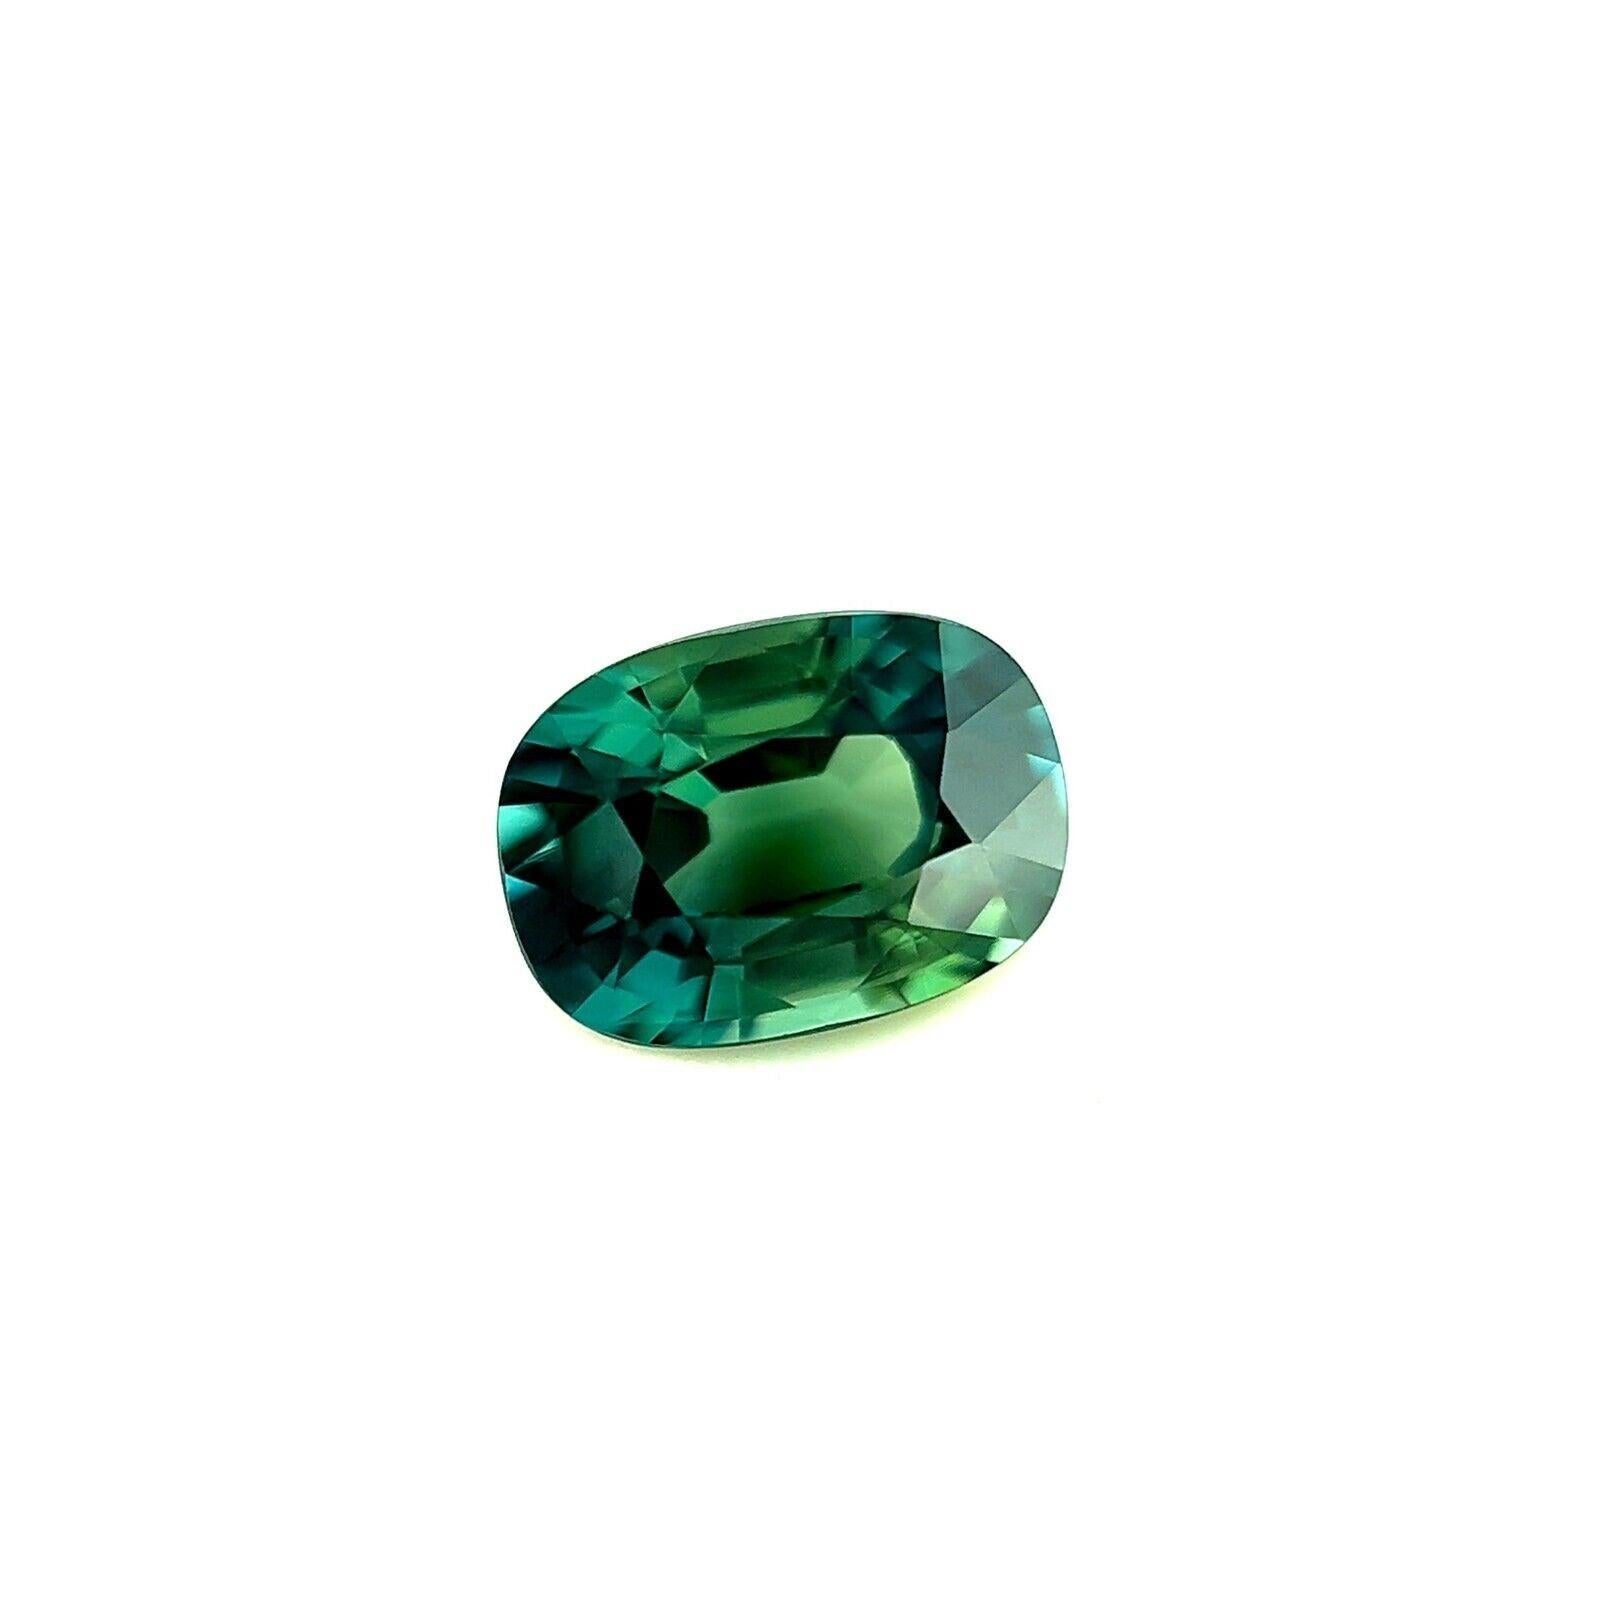 Pierre précieuse rare saphir bleu vert taille coussin de 1,20 carat certifiée par le GRA

Saphir bleu vert naturel certifié GRA non traité, pierre en vrac.
Saphir de 1,20 carat d'une belle couleur bleu vert profond.
Entièrement certifié par GRA,